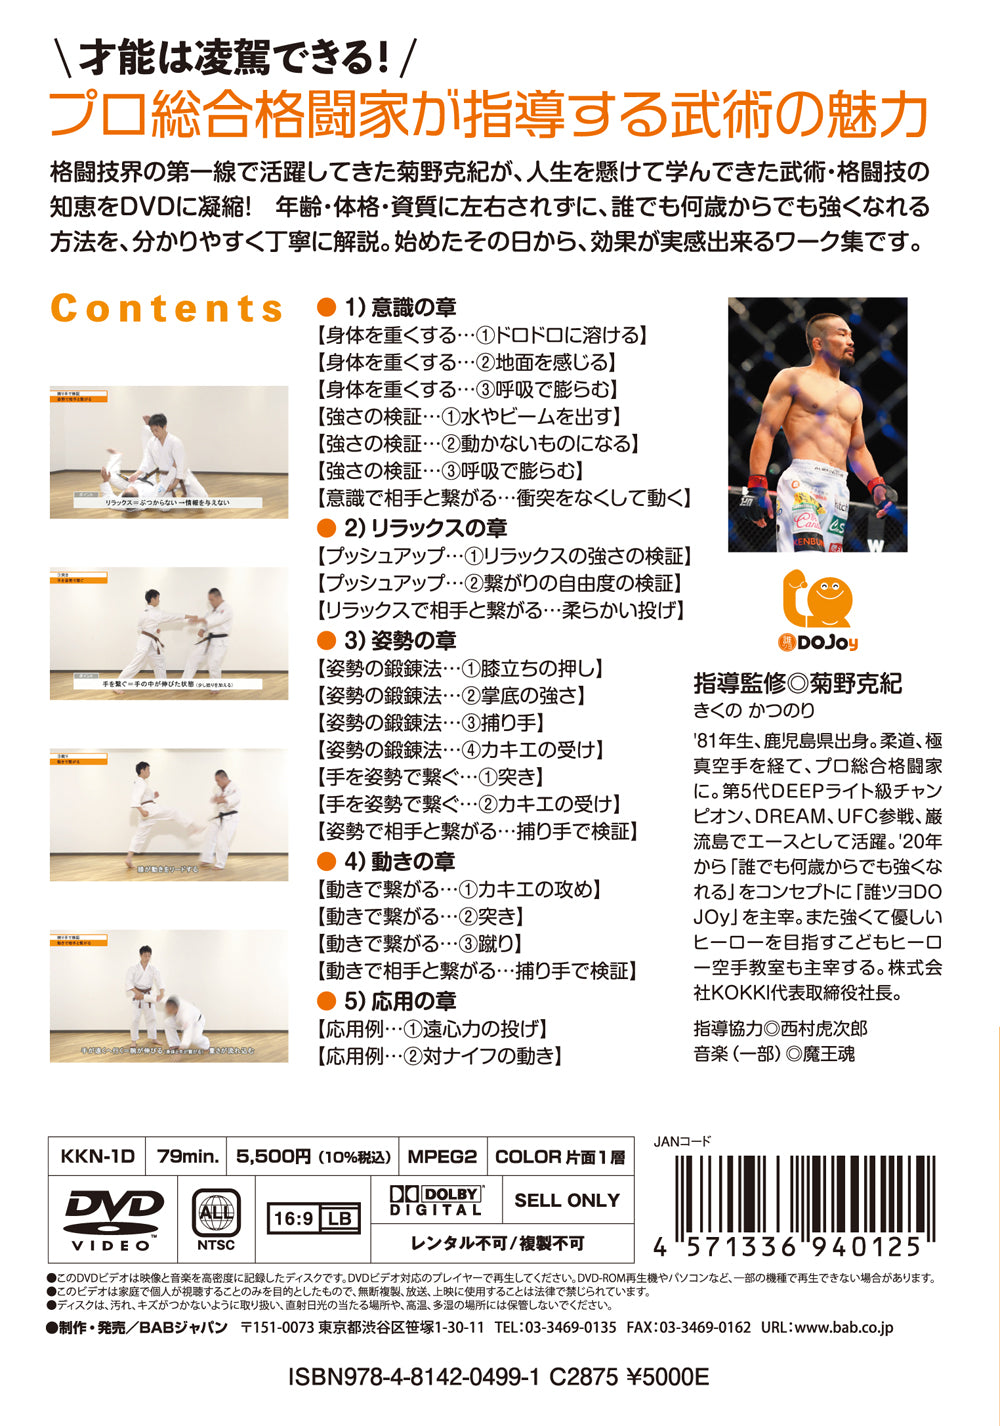 Obtenga fuerza con el DVD Bujutsu de Katsunori Kikuno